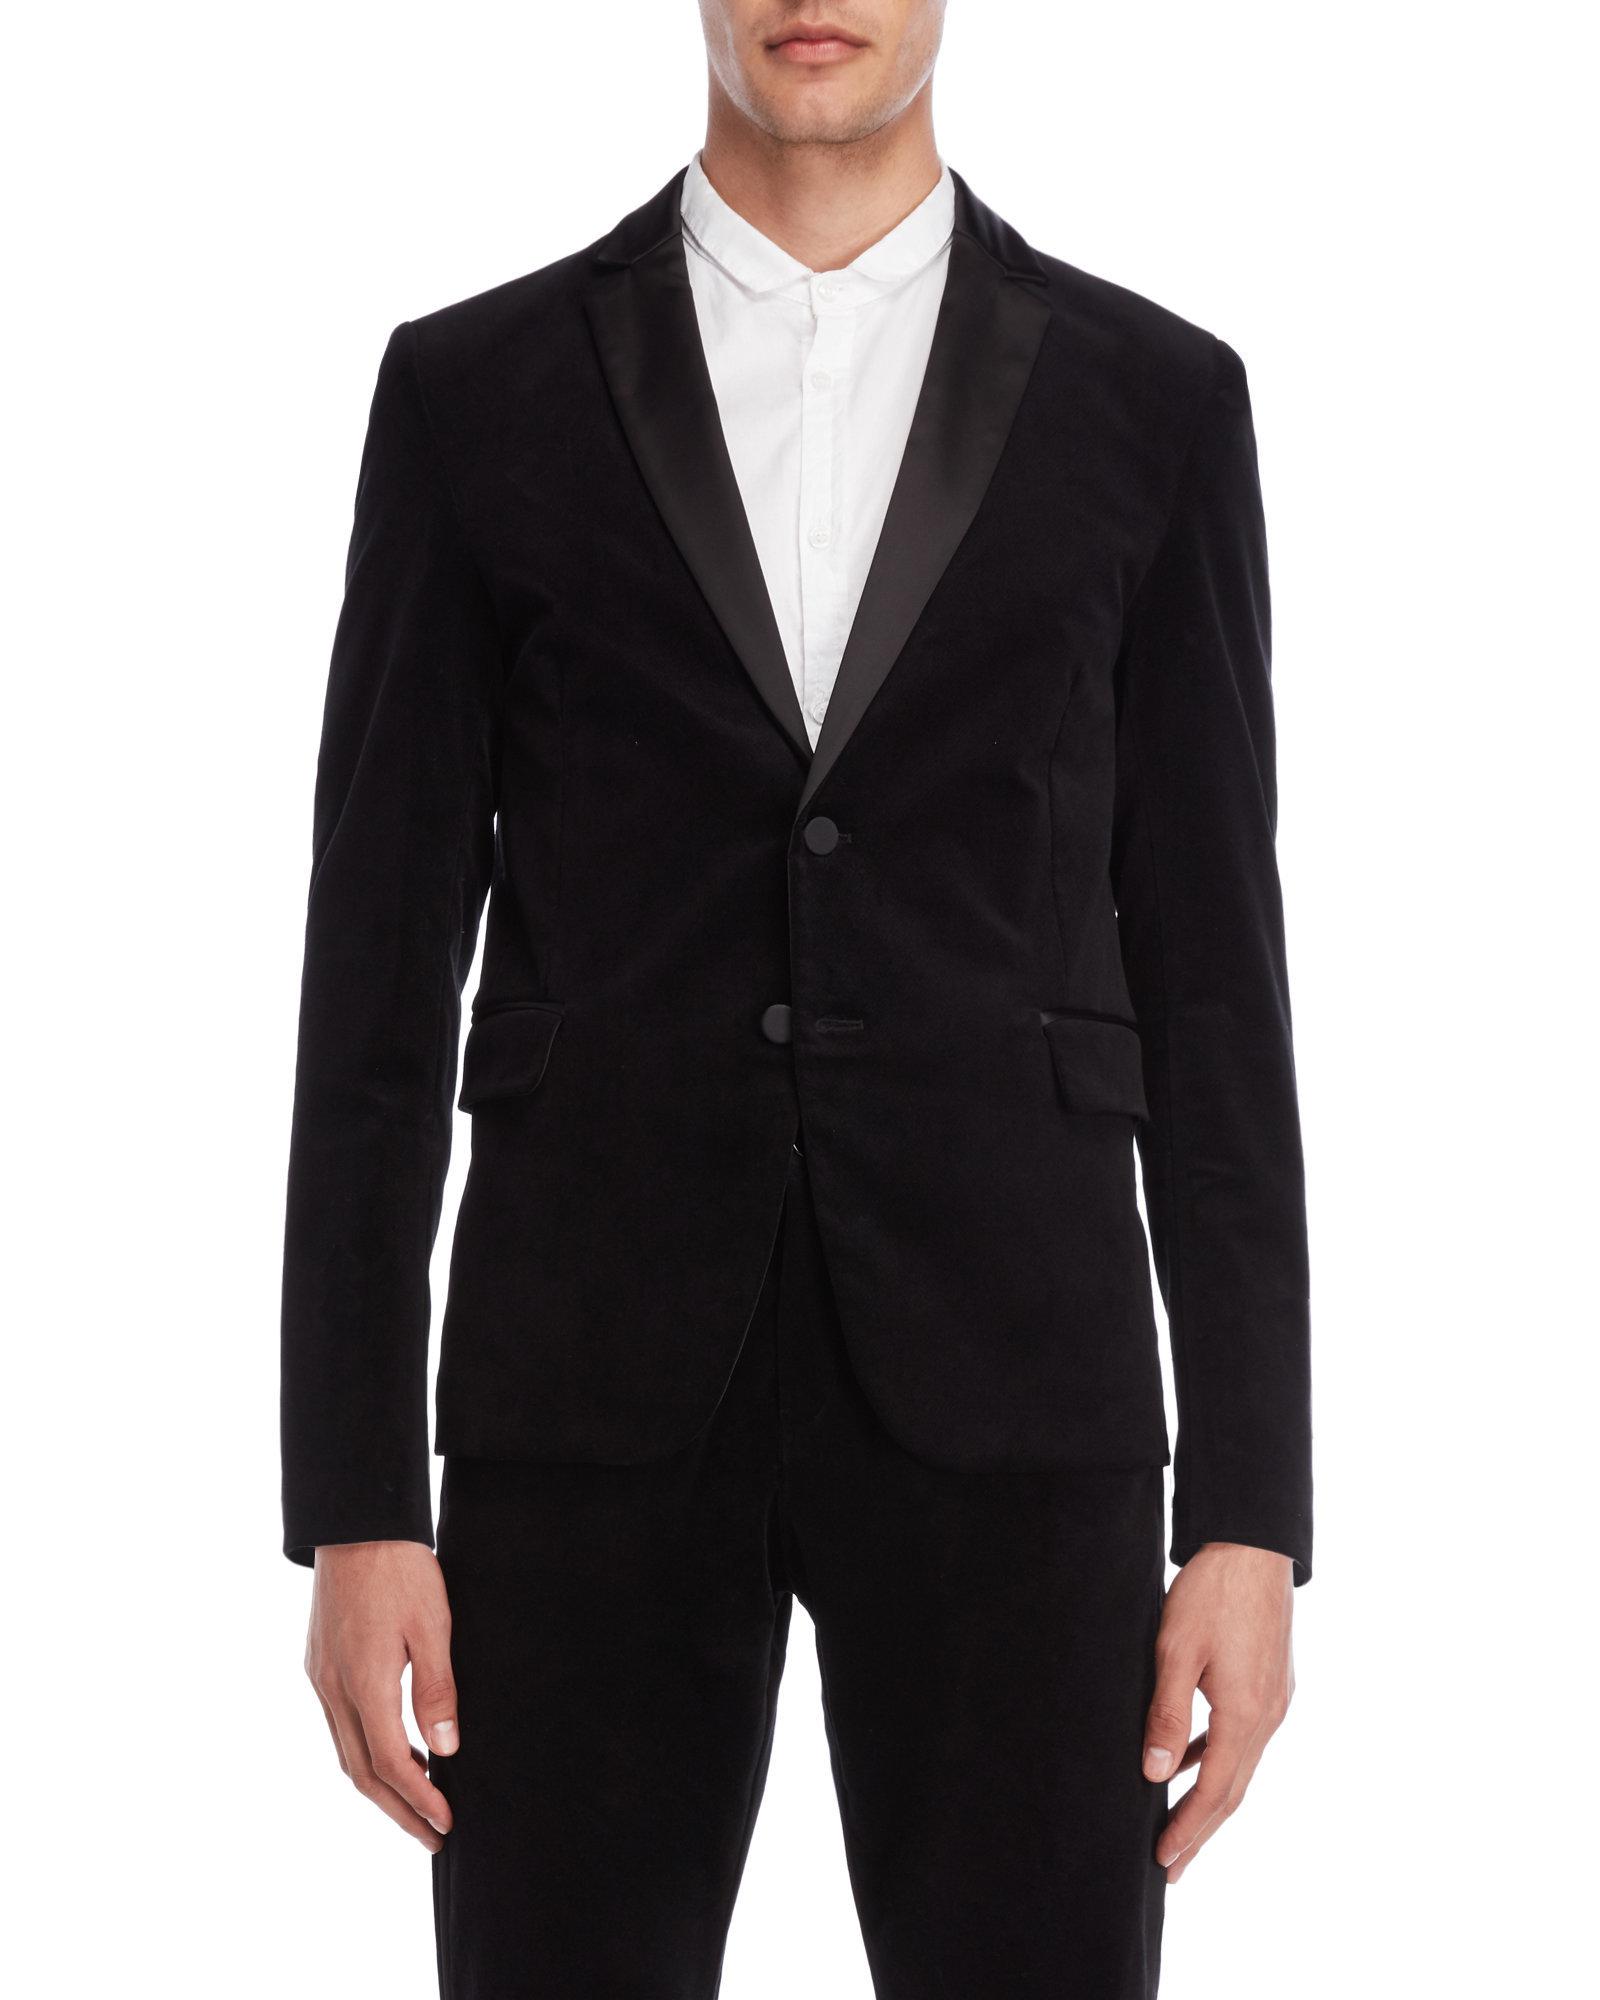 Lyst - Imperial Black Velvet Tuxedo Jacket in Black for Men